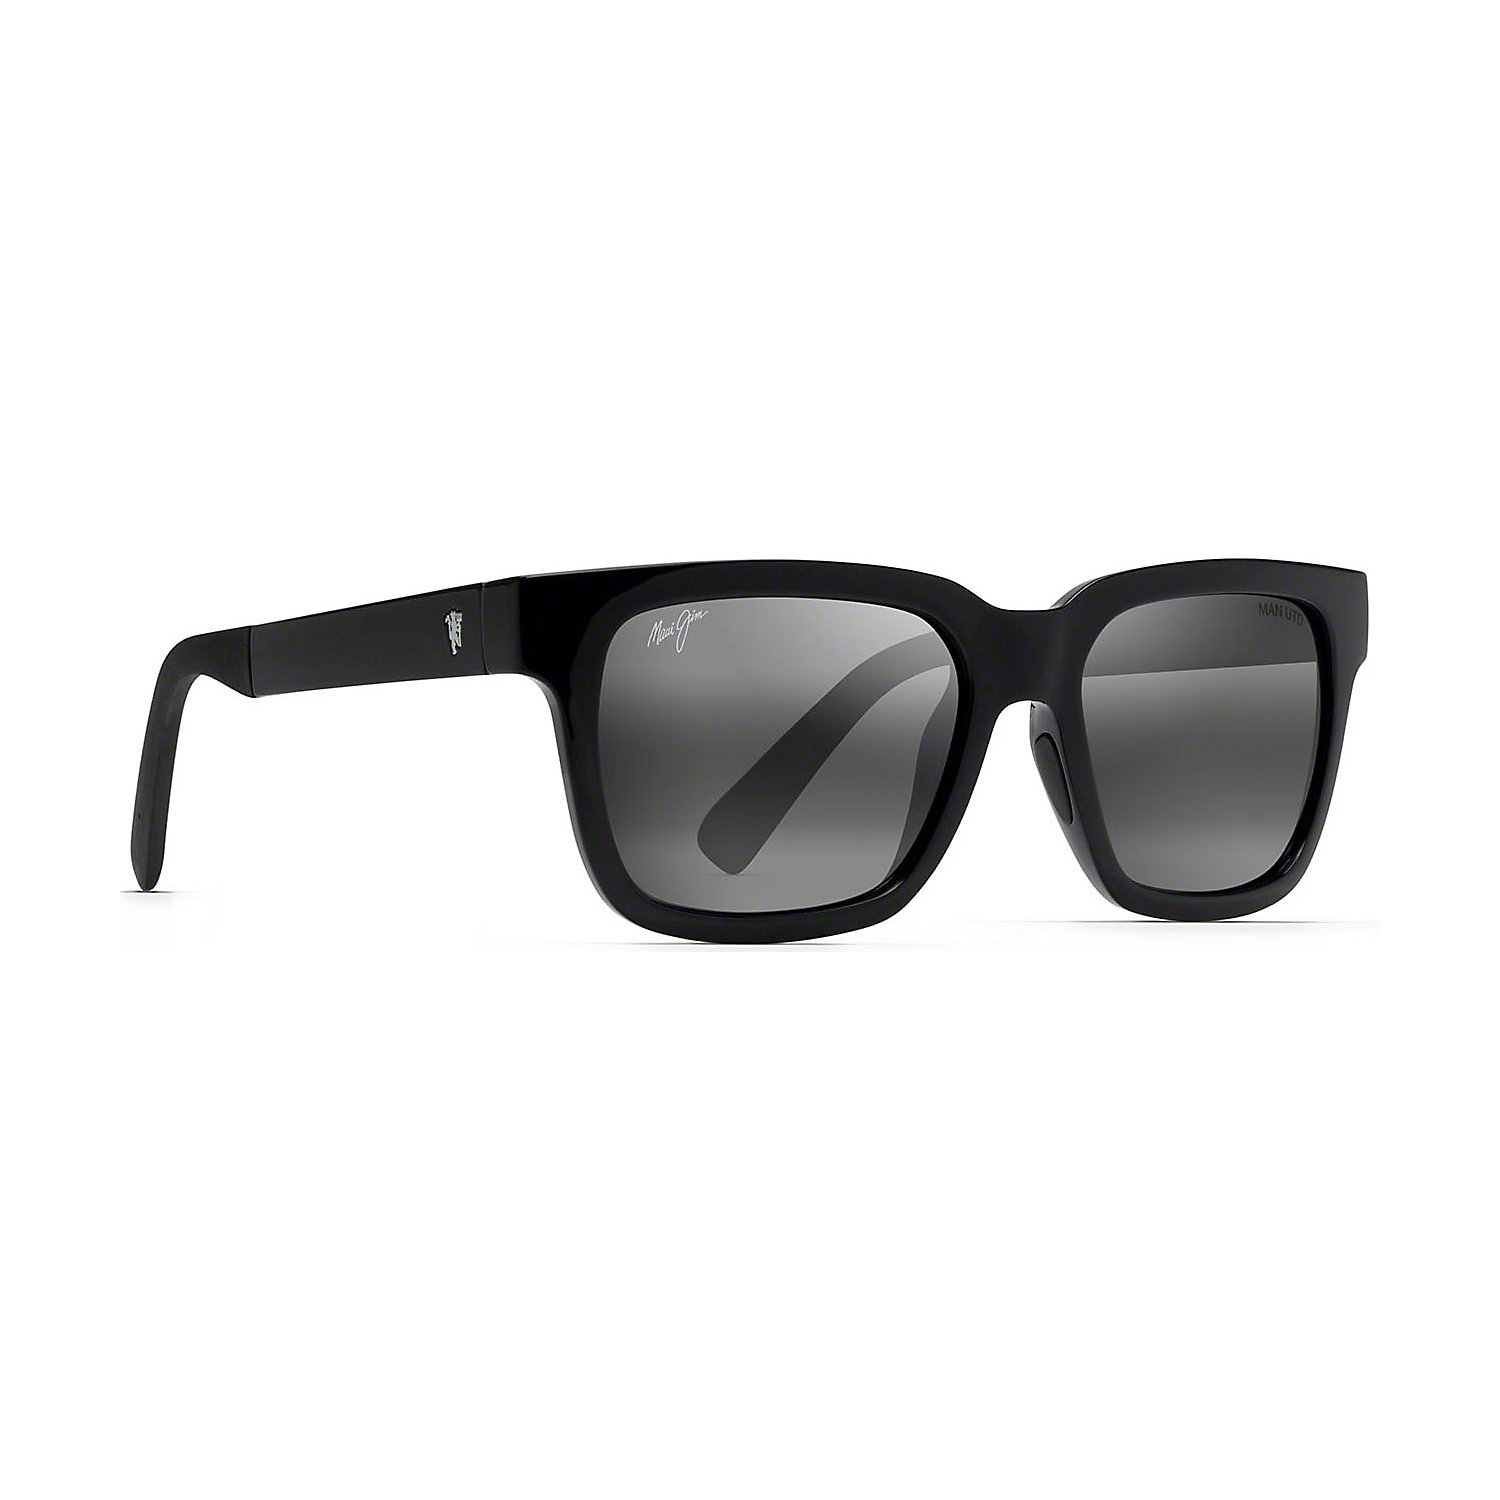 Maui Jim Manchester United Mongoose Polarized Sunglasses